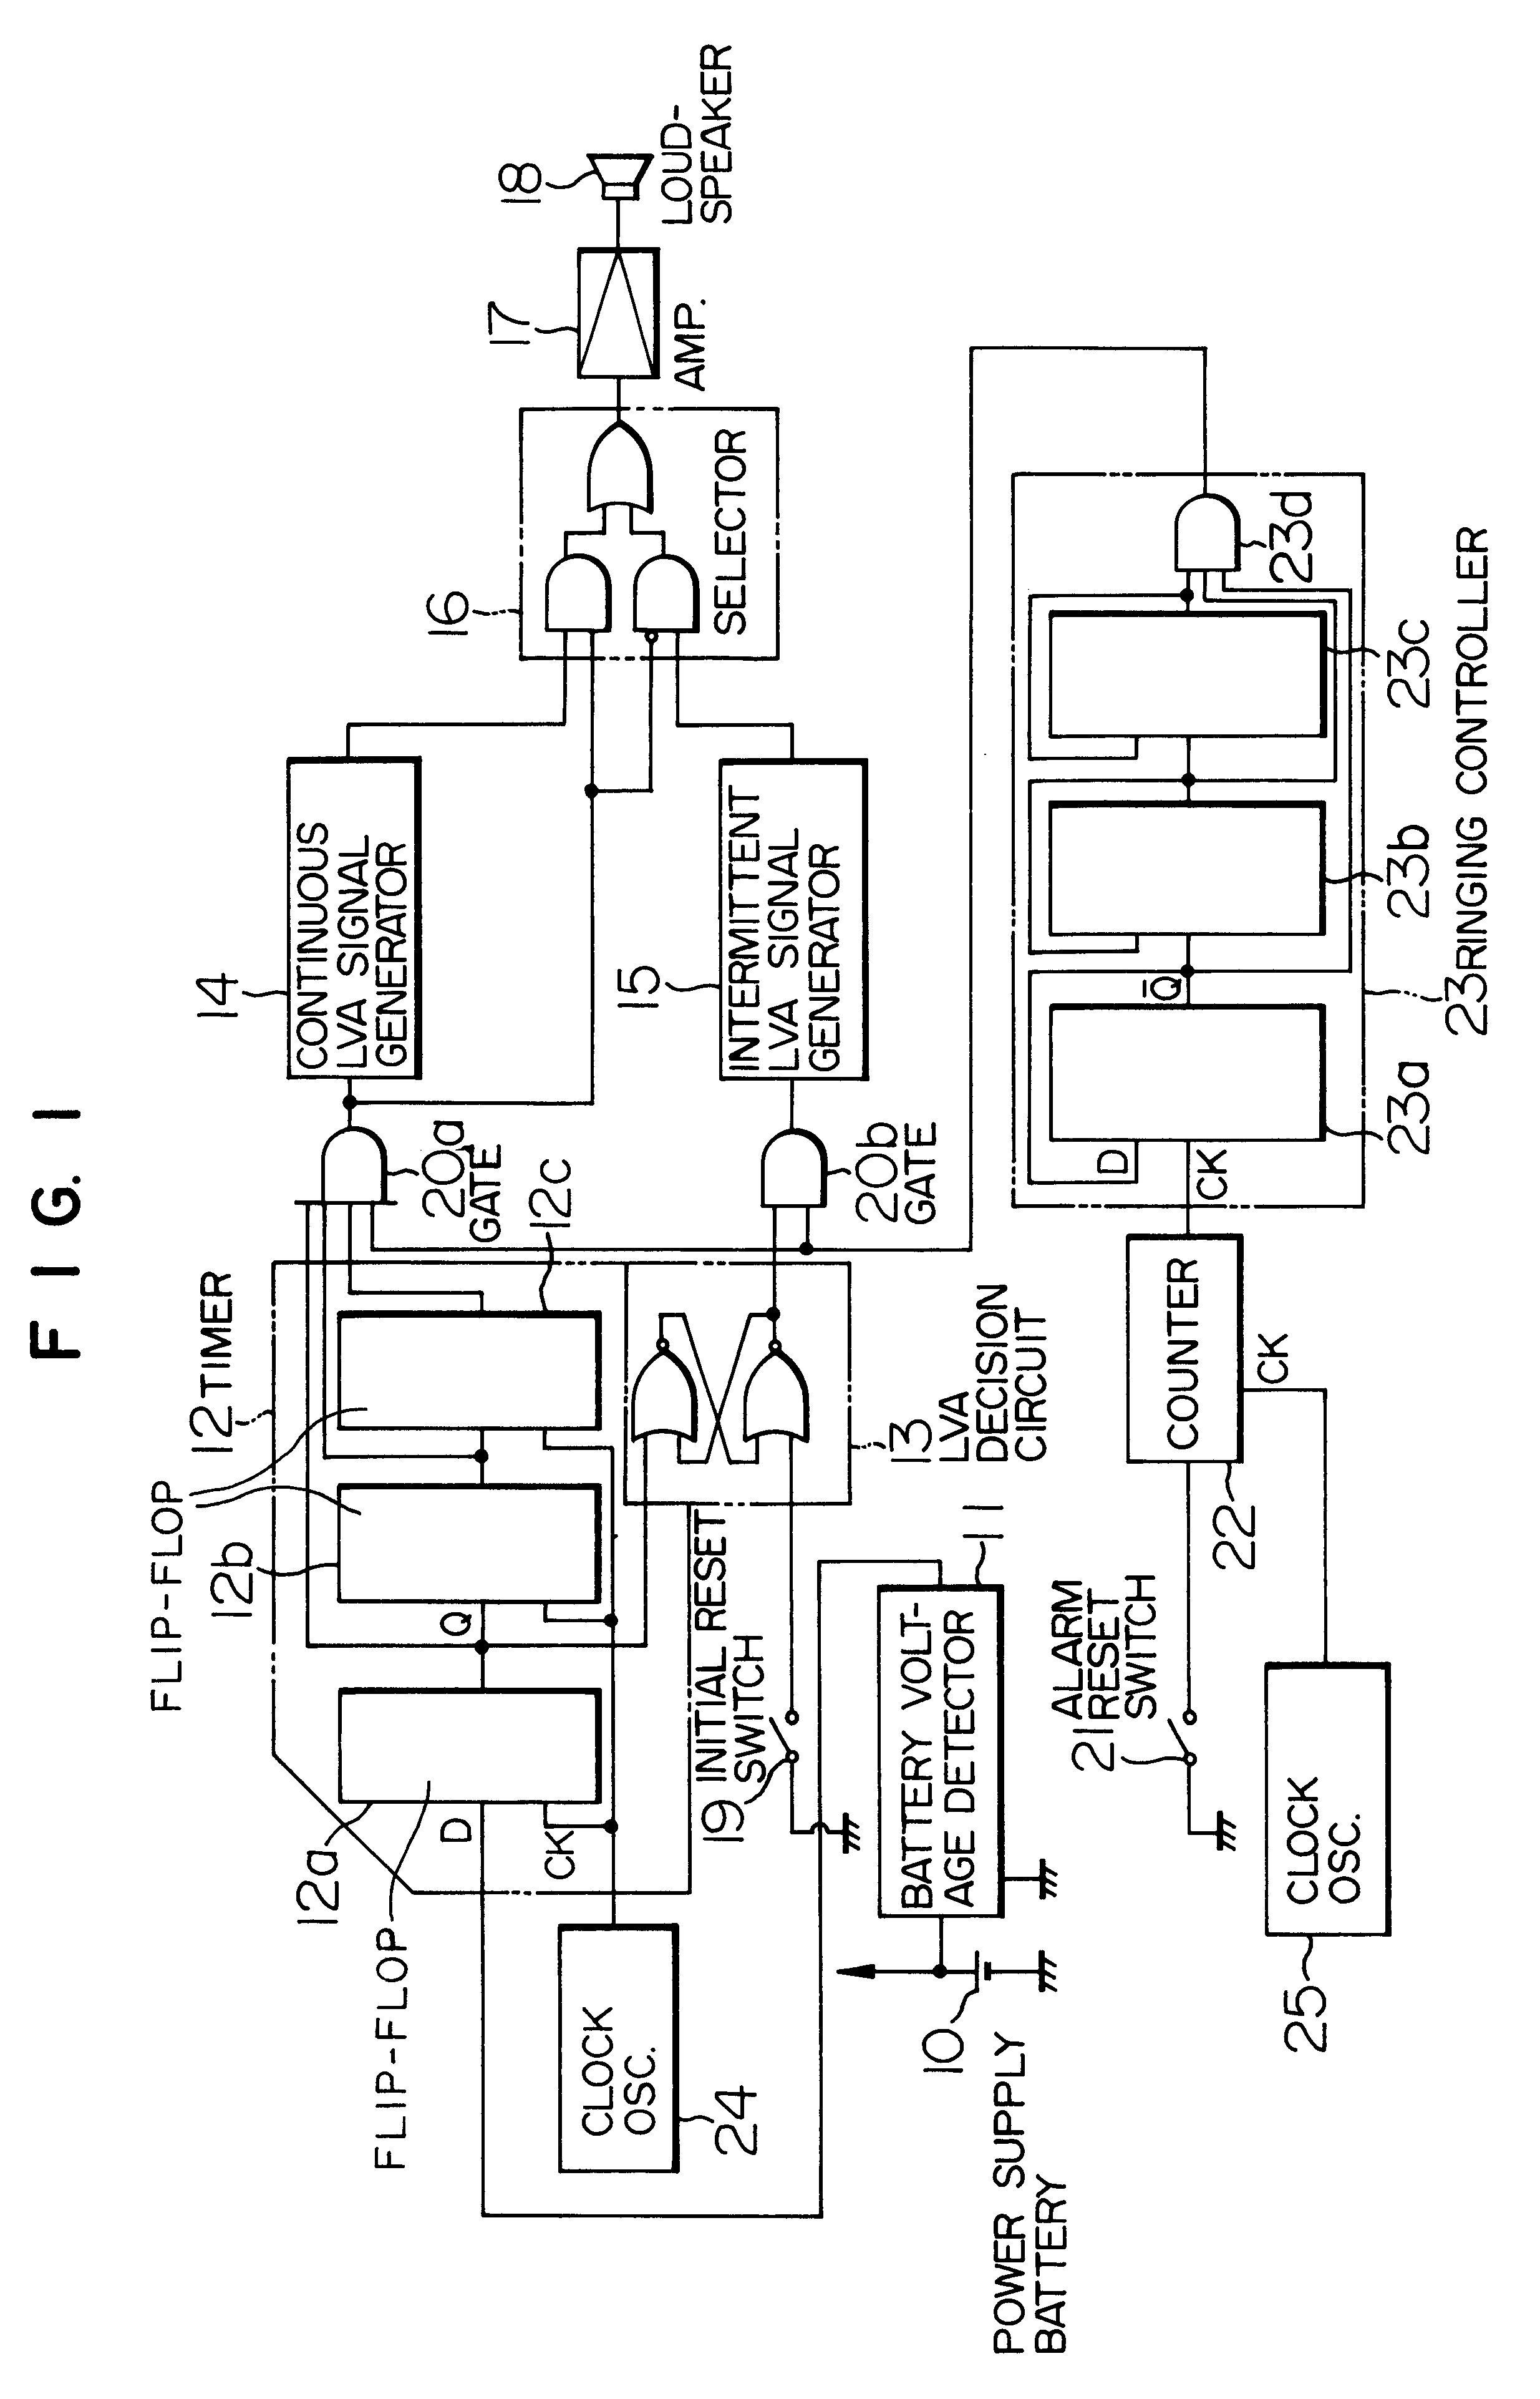 Battery voltage alarm apparatus